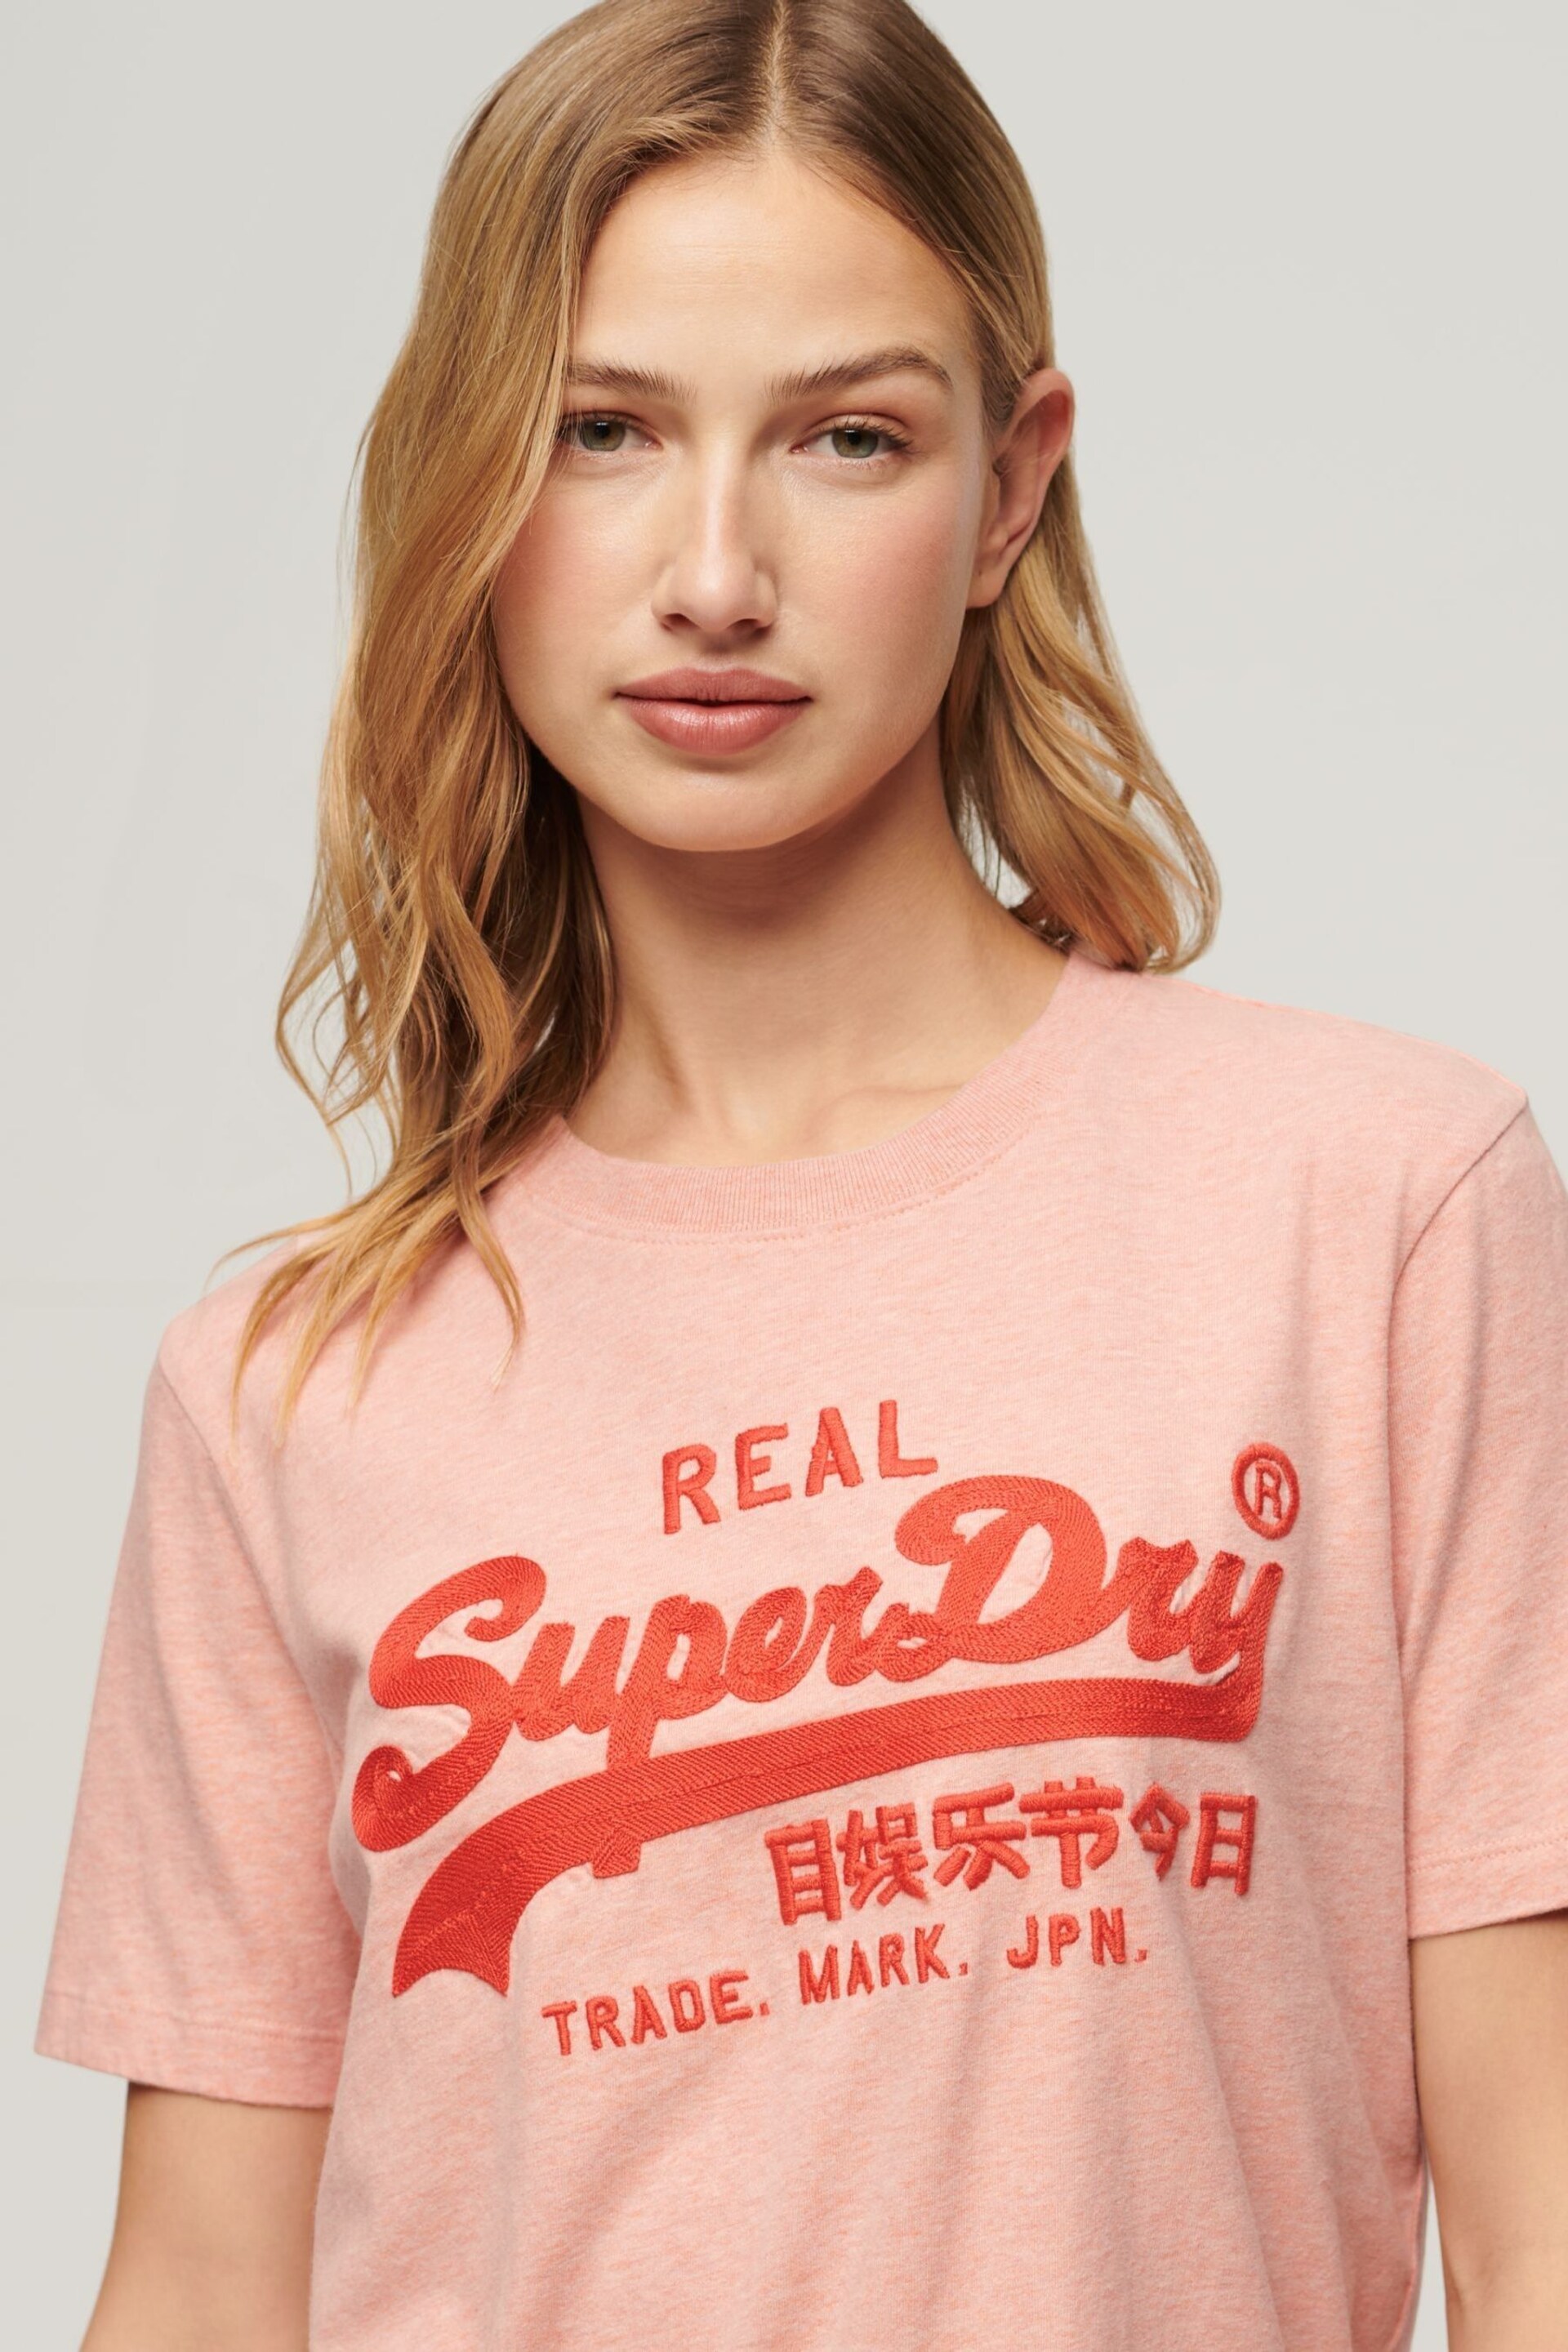 Superdry Pink Embroidered Vintage Logo T-Shirt - Image 3 of 3